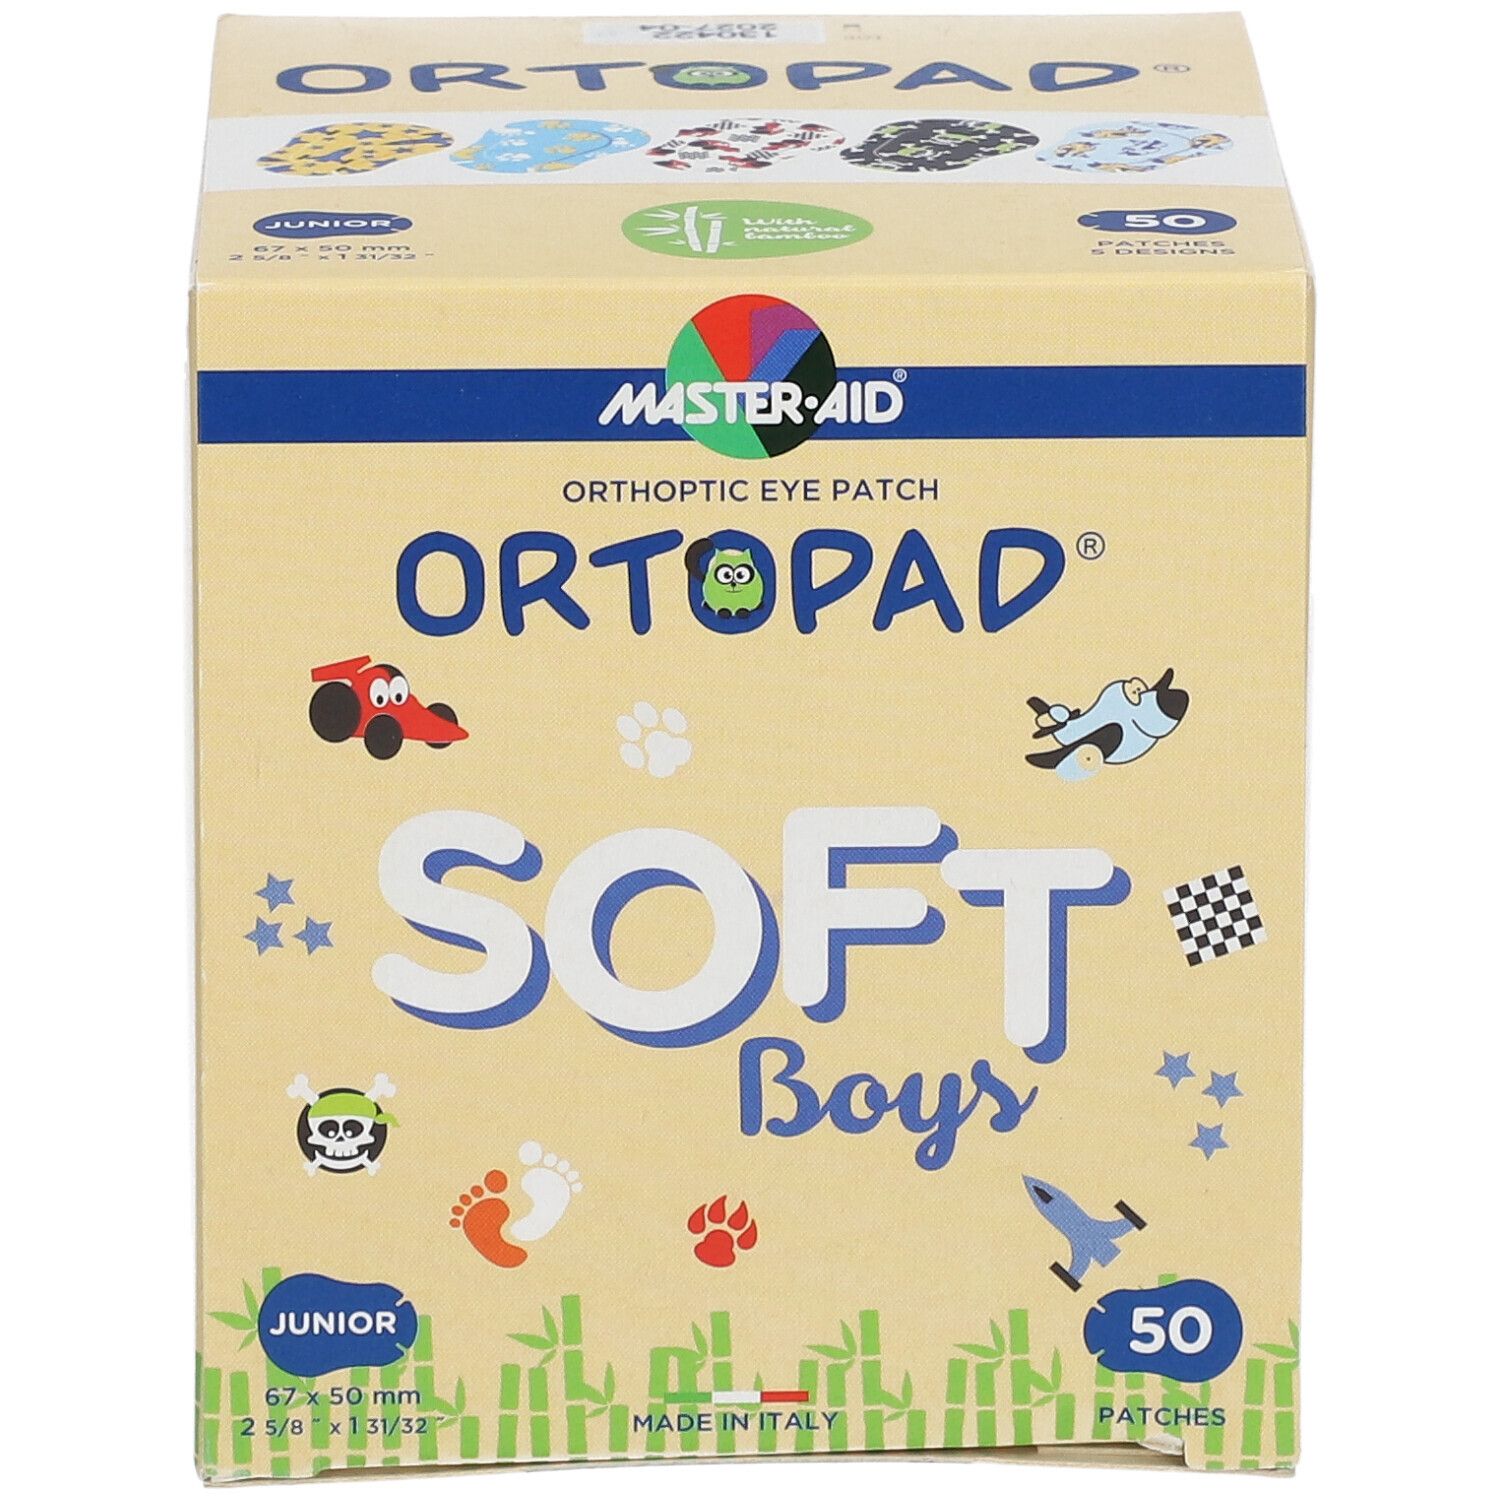 Ortopad Soft Boys Junior 67x50mm 72241